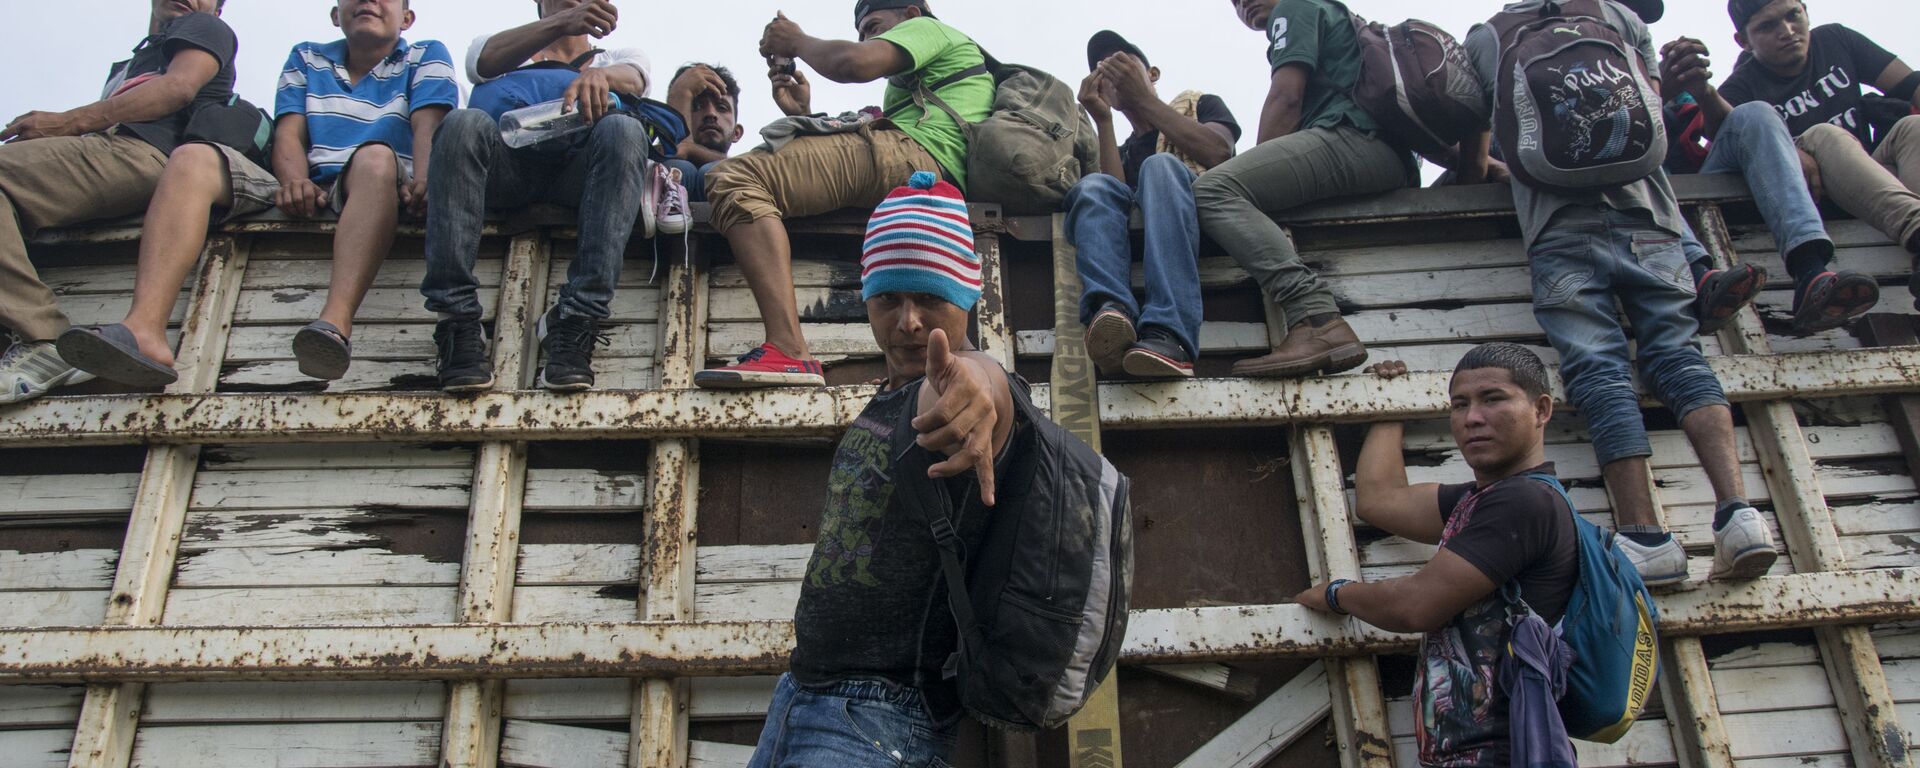 Những người dân di cư từ Honduras đang hòa vào dòng người đi qua lãnh tổ Mexico về hướng biên giới với Hoa Kỳ - Sputnik Việt Nam, 1920, 21.09.2021